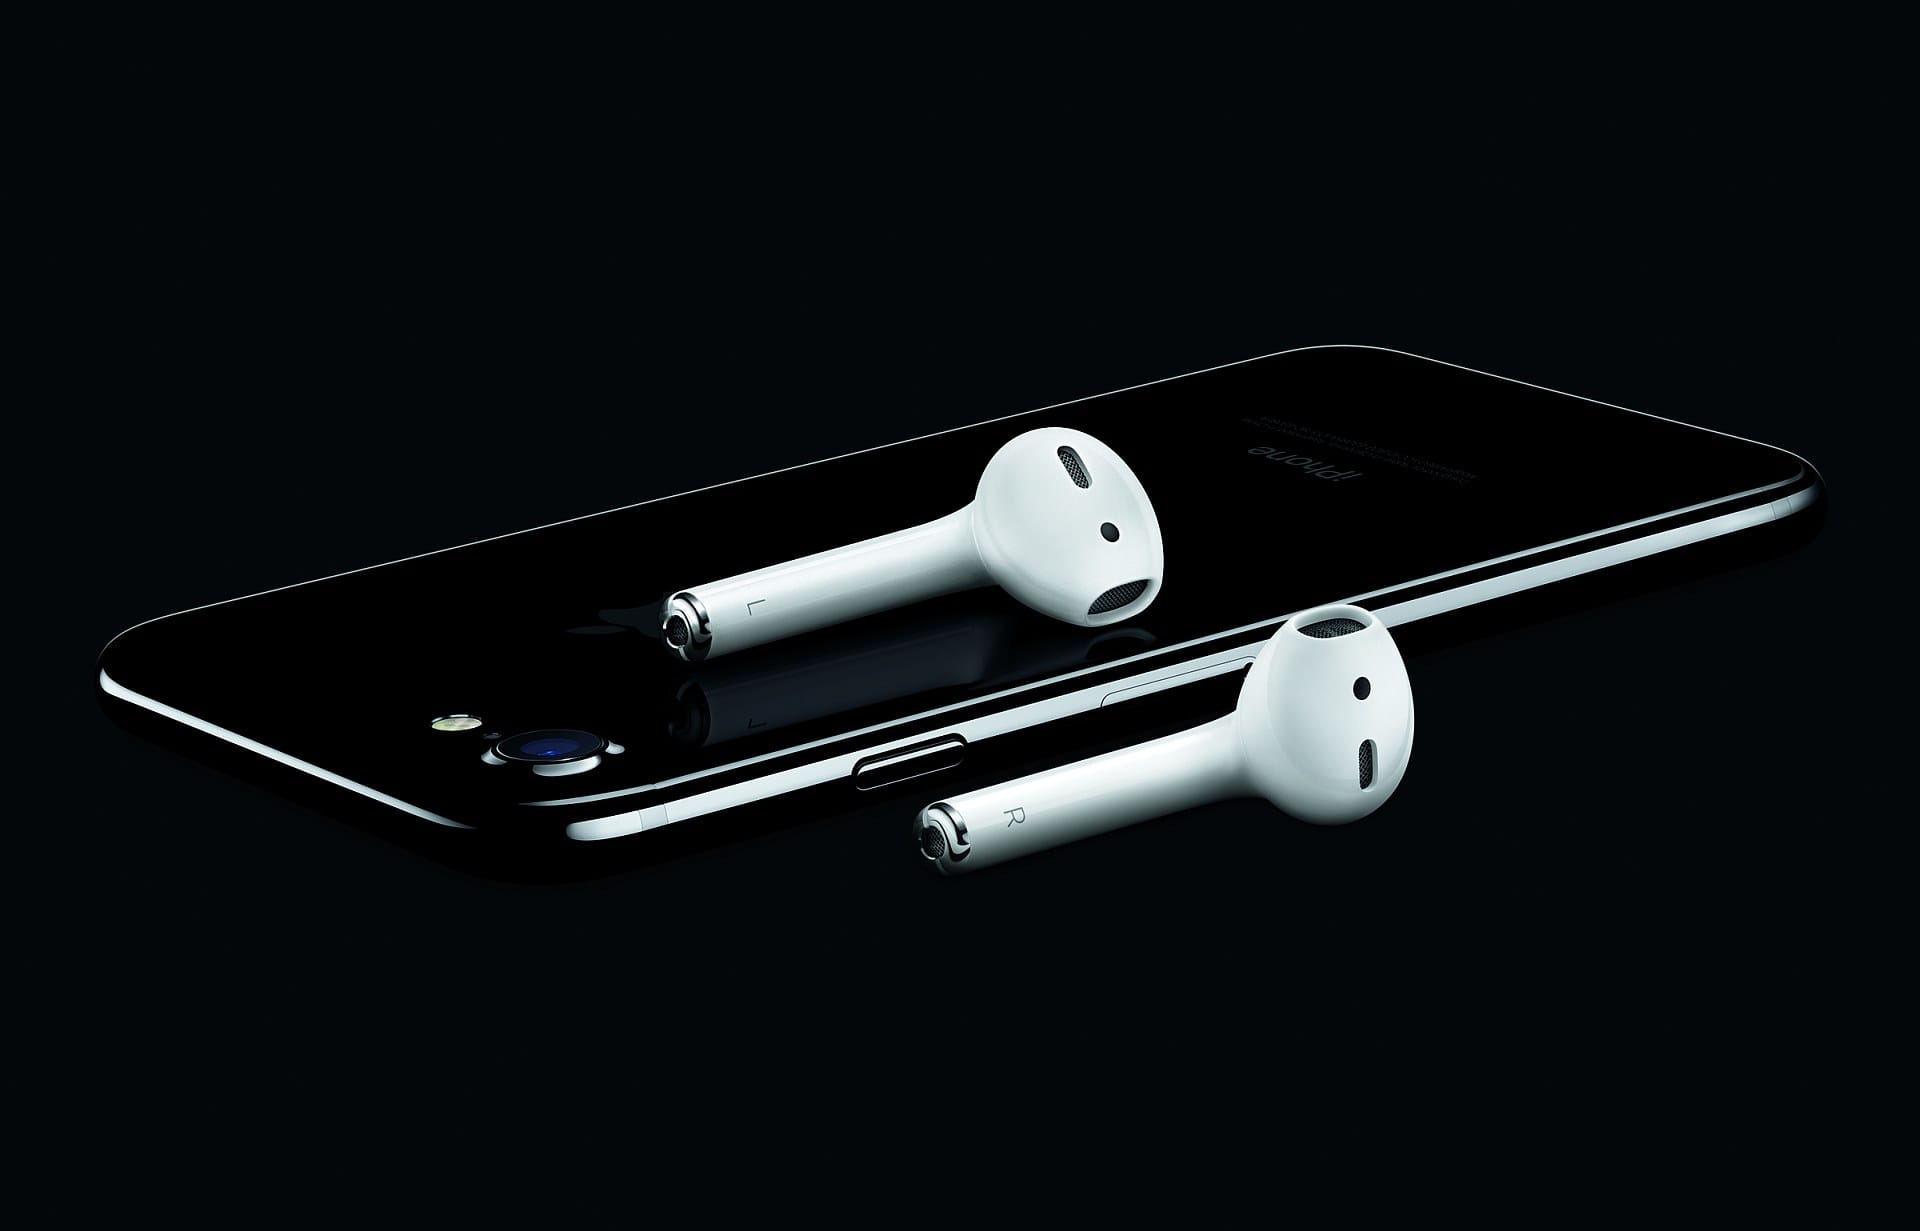 Apples drahtlose Airpods für etwa 180 Euro eignen sich gut zum Sporttreiben und für unterwegs. Dazu klingen sie mit MP3 und Spotify vom Smartphone sehr gut.